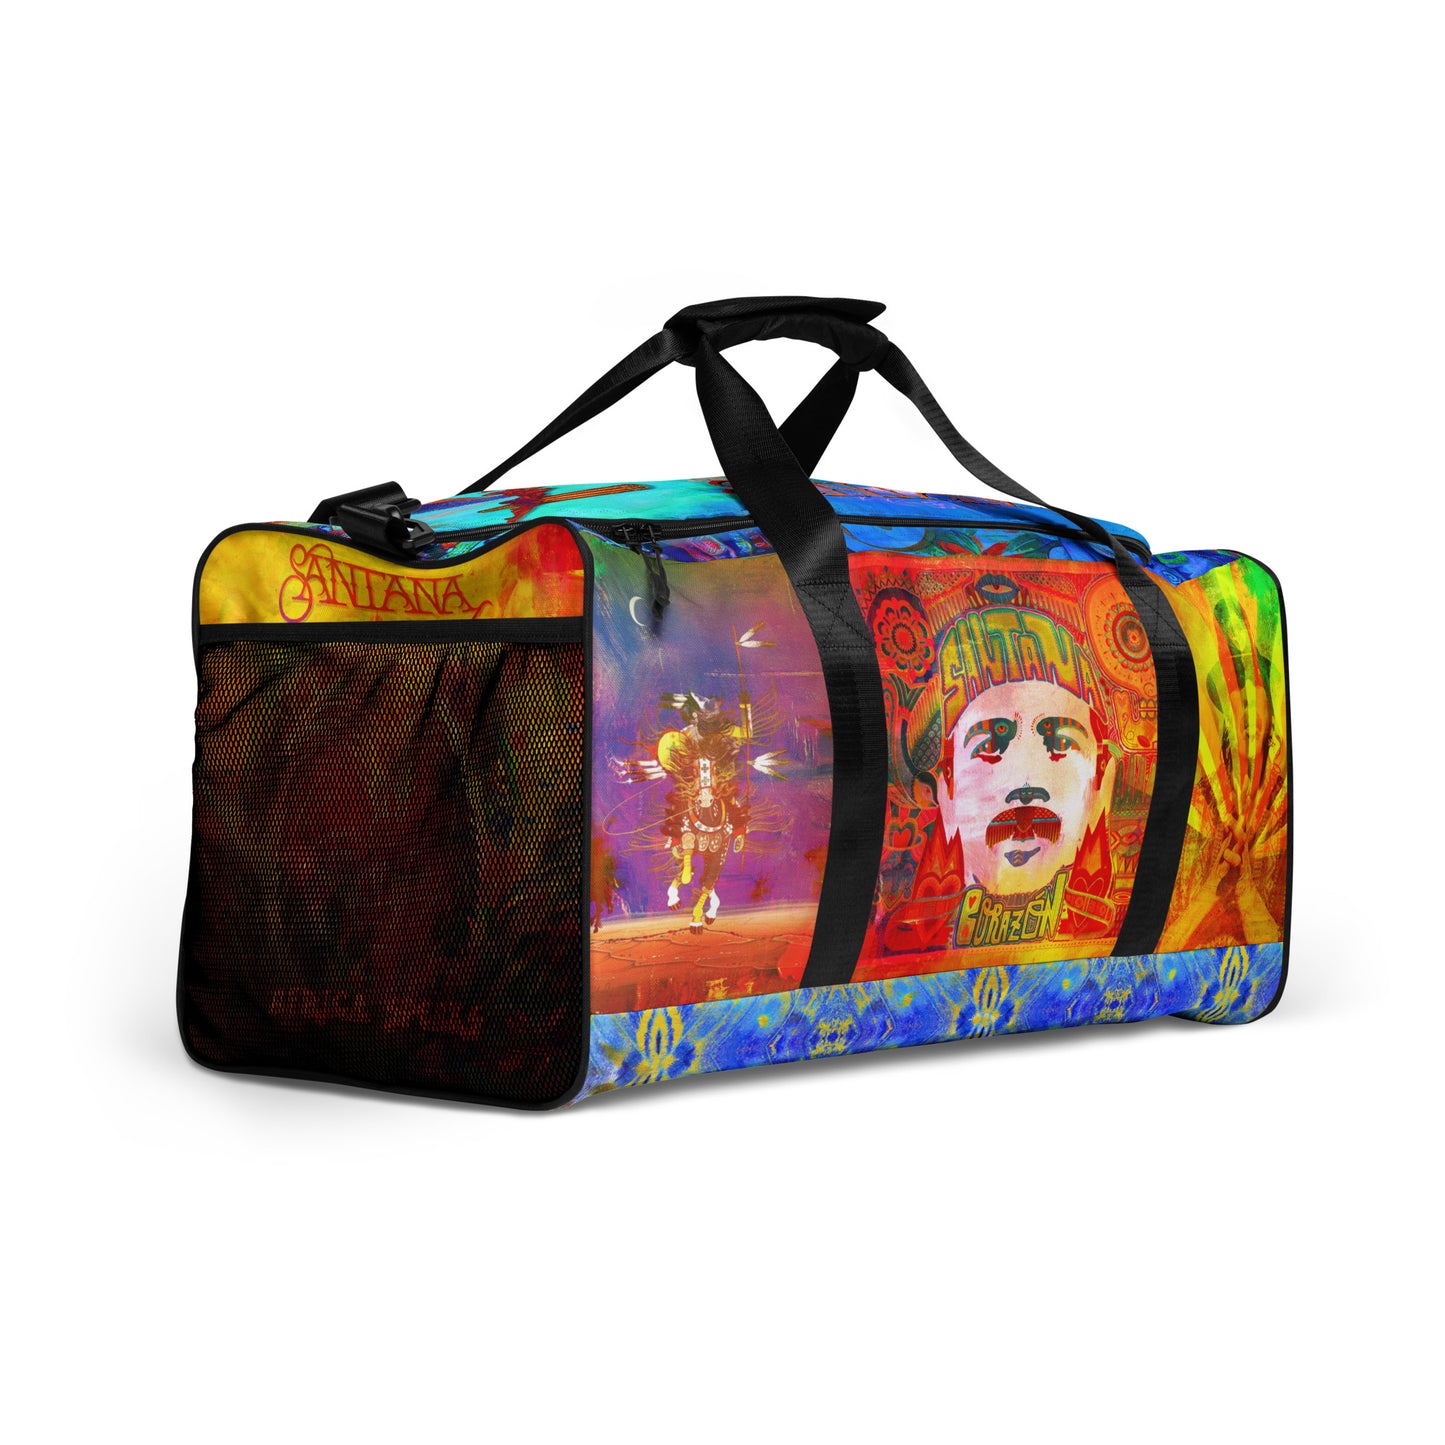 Santana "Album Mash Up" All-Over Duffle Bag (Print on Demand)